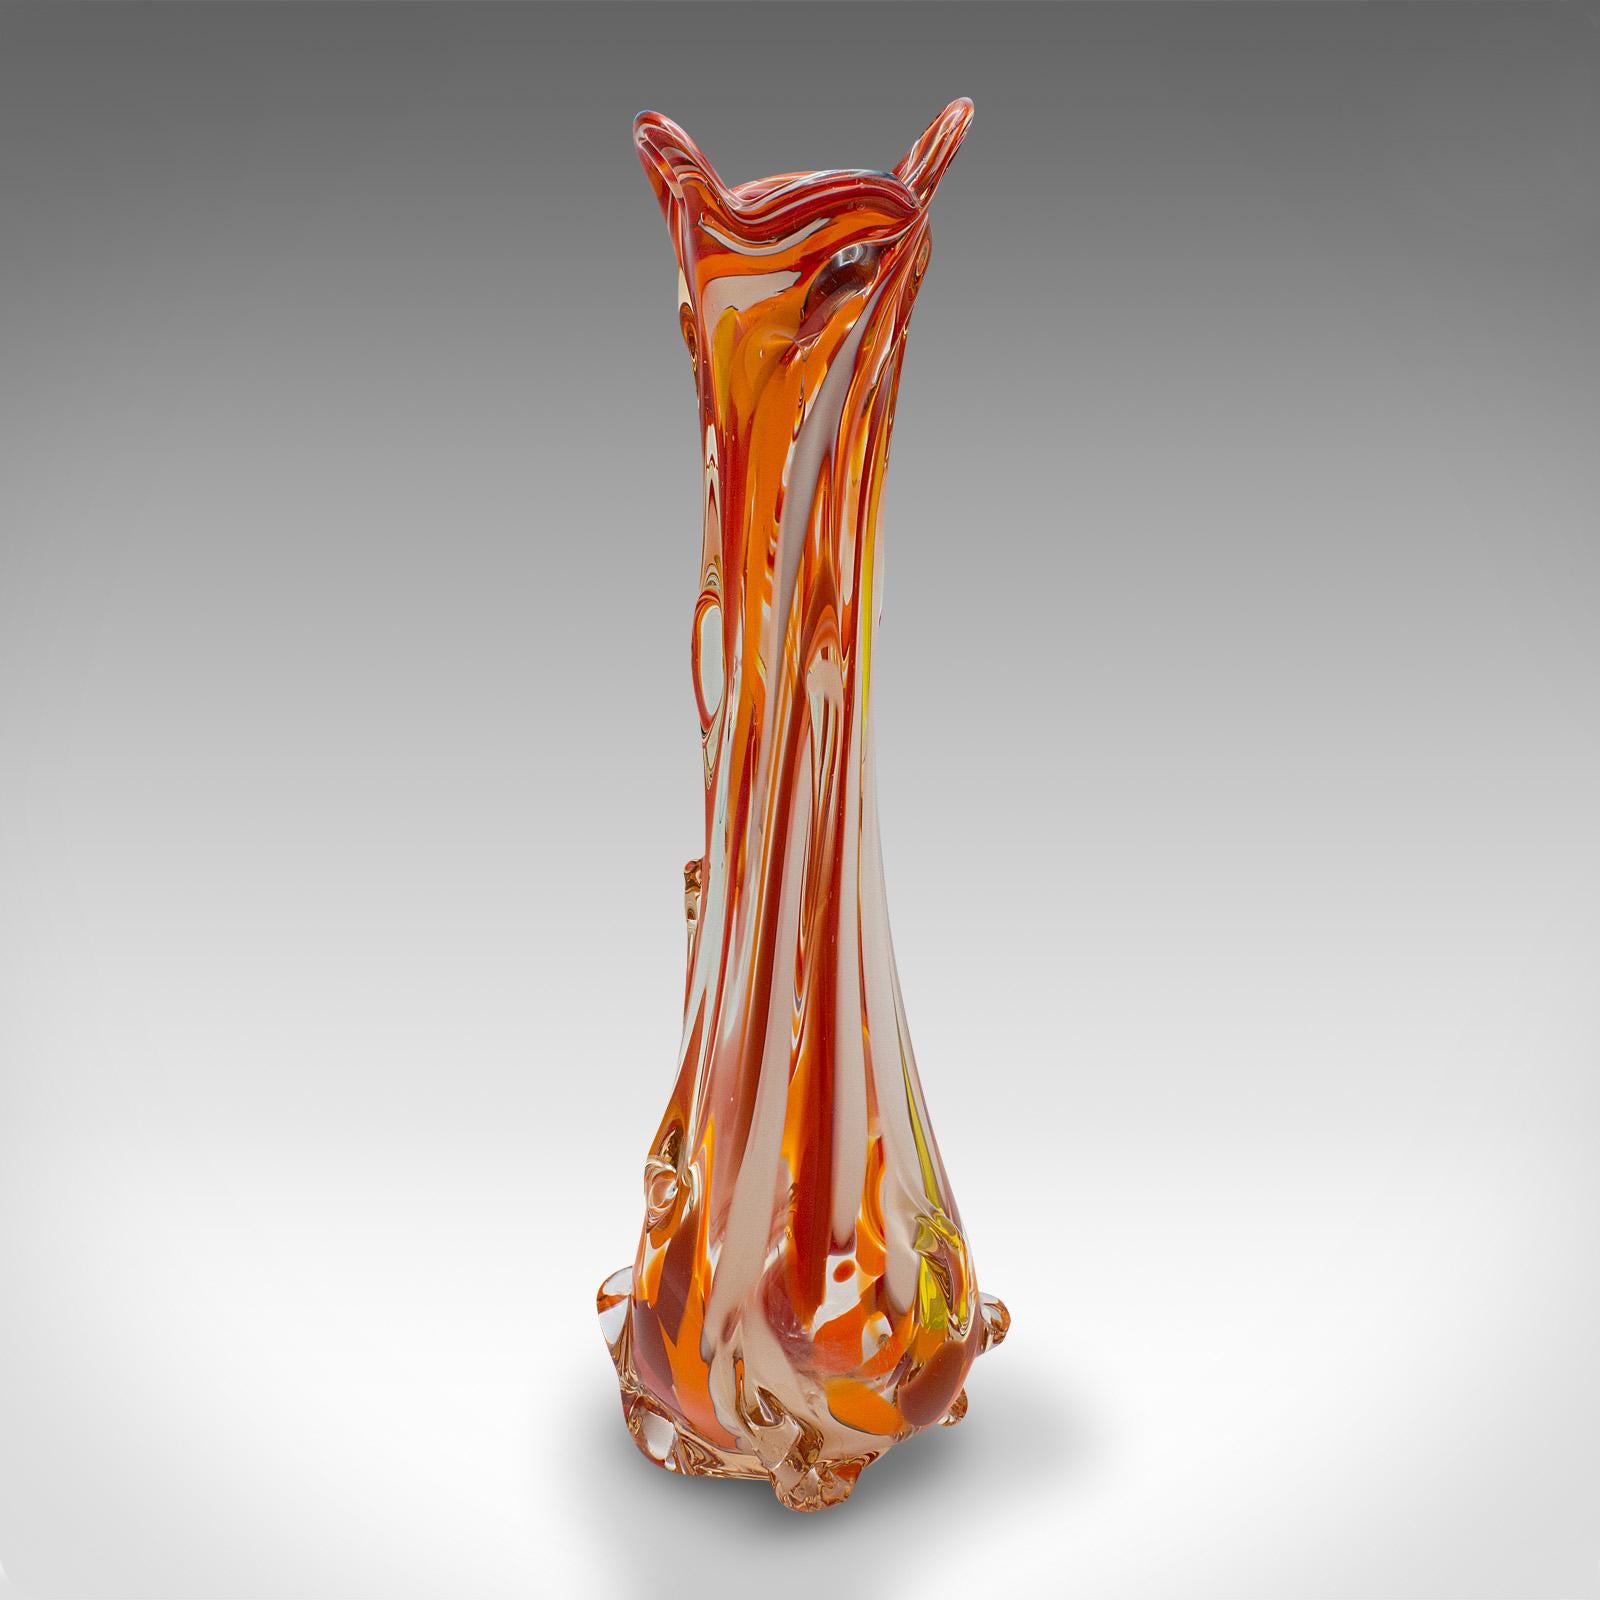 Dies ist eine hohe Vintage Murano Explosion Vase. Eine italienische Blumenmanschette aus Kunstglas, aus dem späten 20. Jahrhundert, um 1970.

Ungestüme Farbe in dieser kühnen, fabelhaften Vase
Zeigt eine wünschenswerte gealterte Patina und in gutem